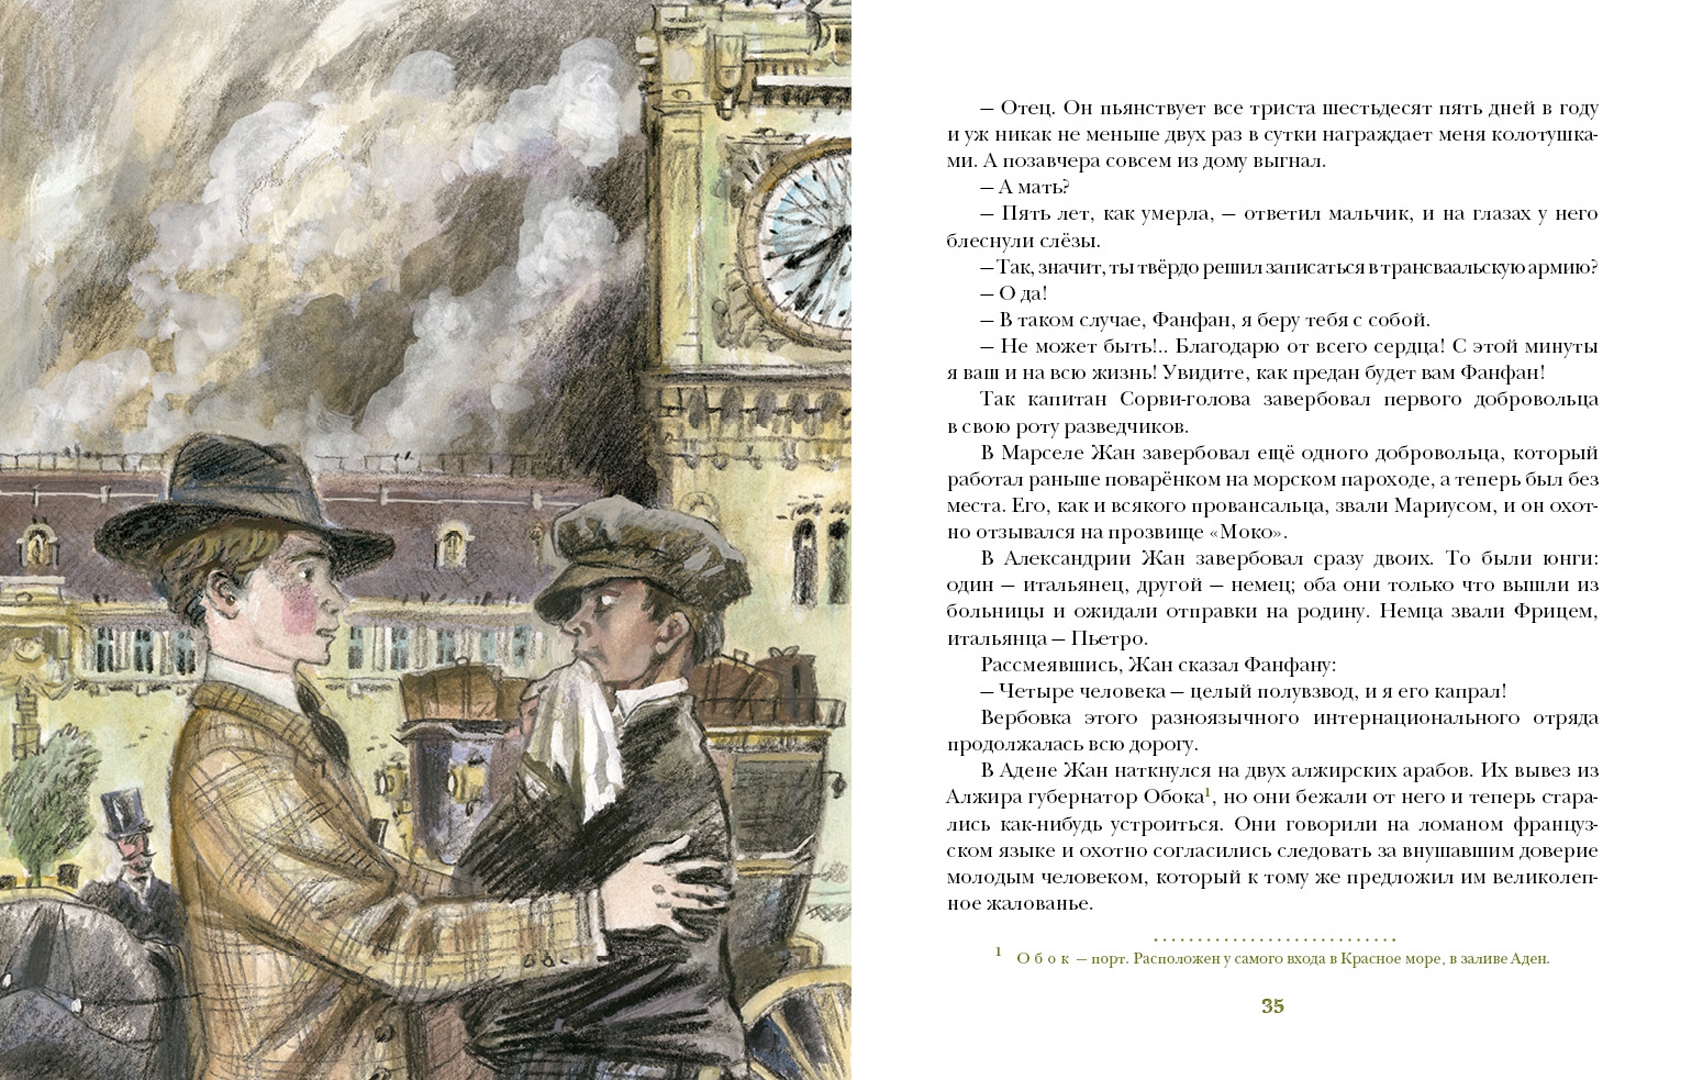 Иллюстрация 1 из 40 для Капитан Сорви-голова - Луи Буссенар | Лабиринт - книги. Источник: Лабиринт